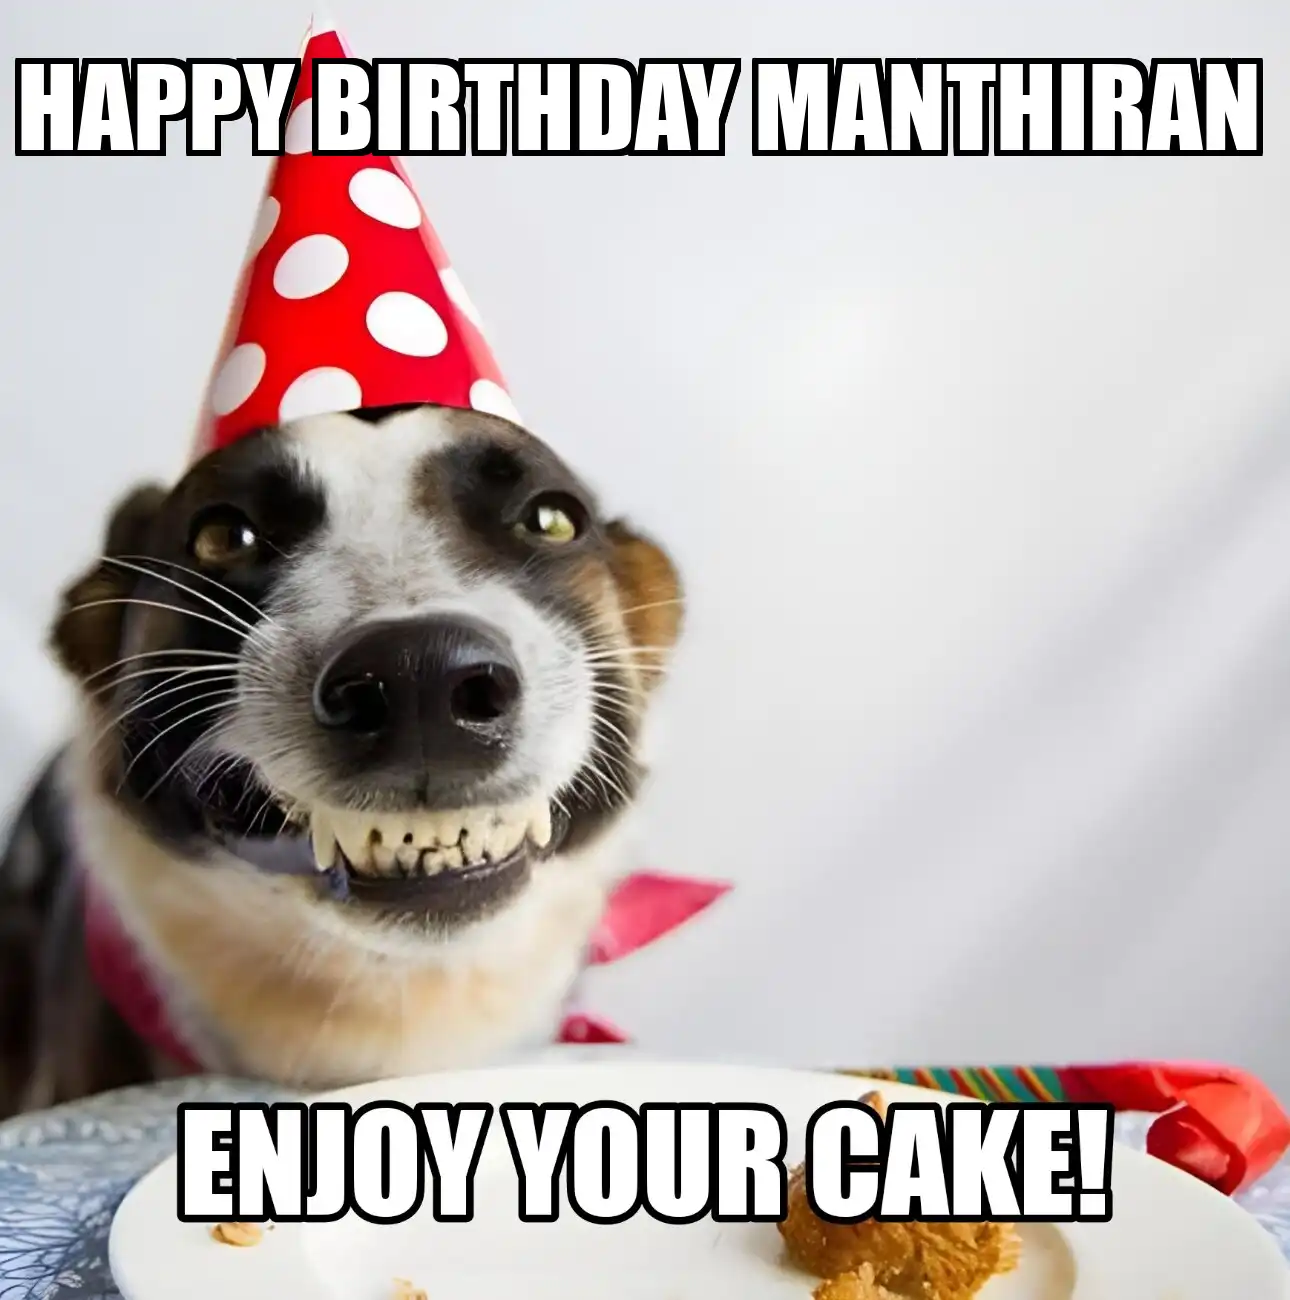 Happy Birthday Manthiran Enjoy Your Cake Dog Meme